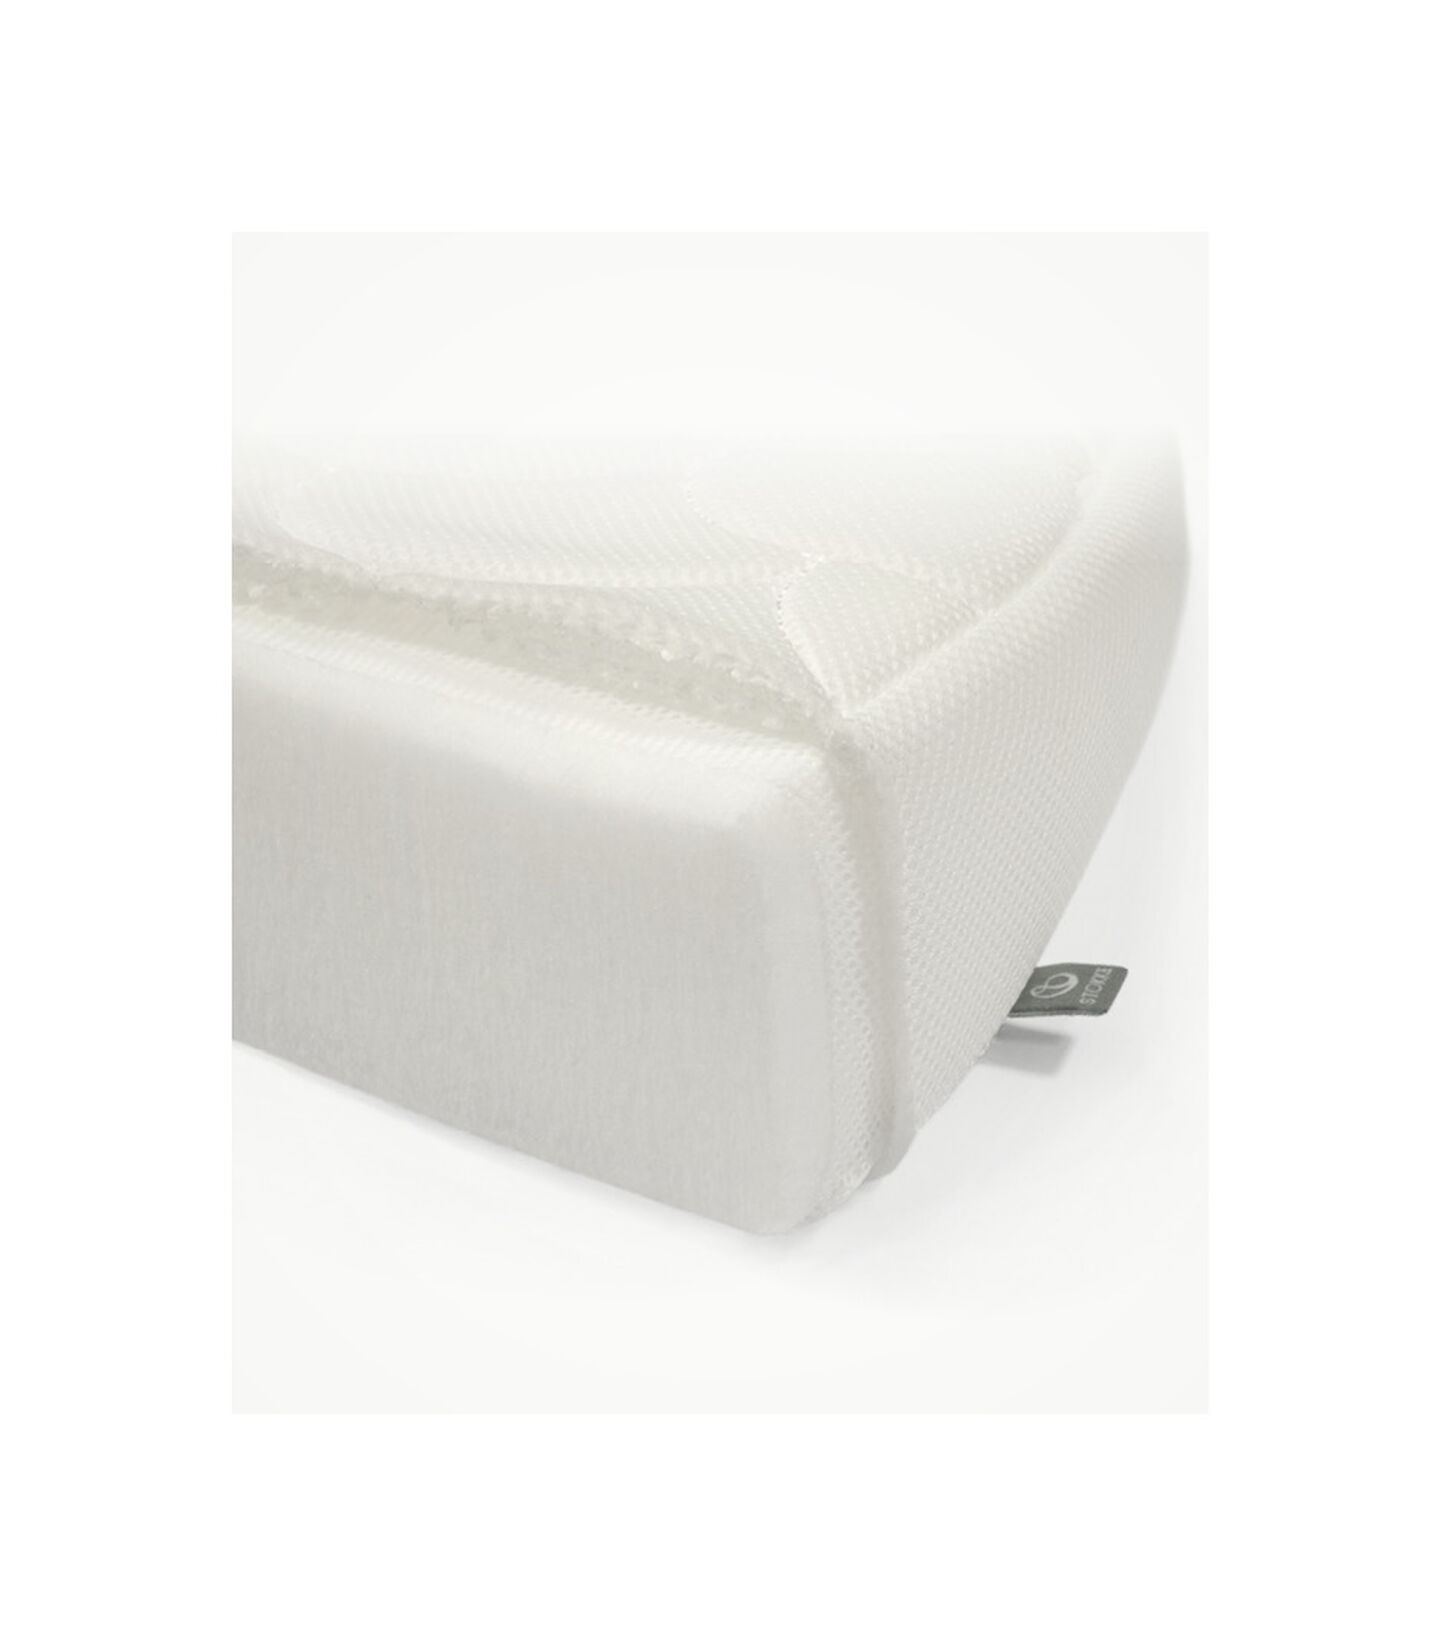 Matratze für Stokke® Sleepi™ Bett V3 in White, White, mainview view 3